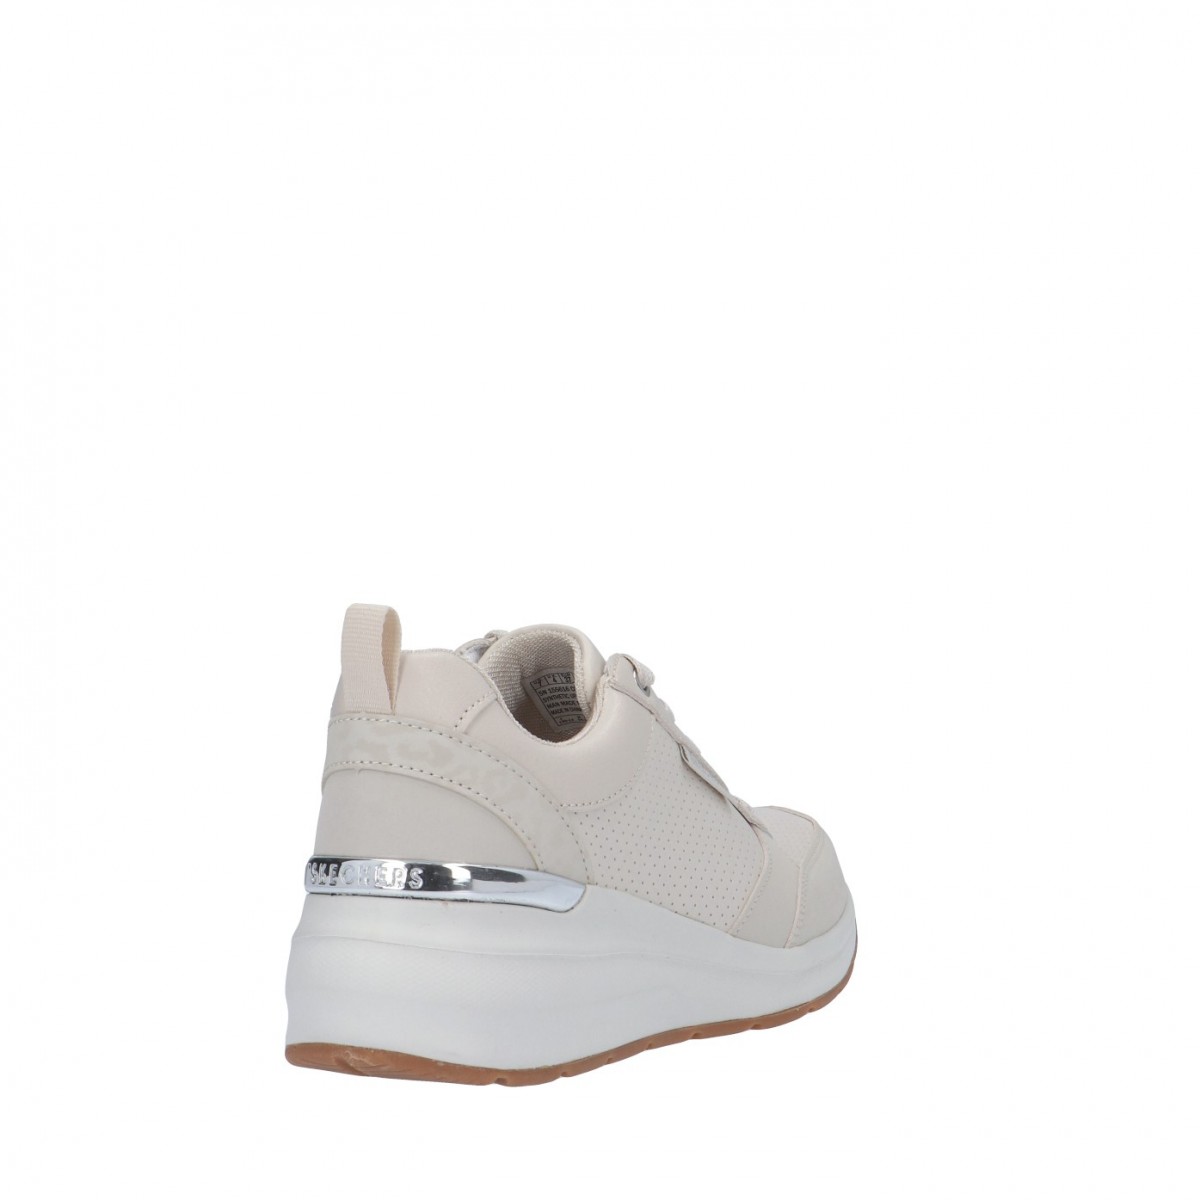 Skechers Sneaker Bianco sporco Gomma 155616